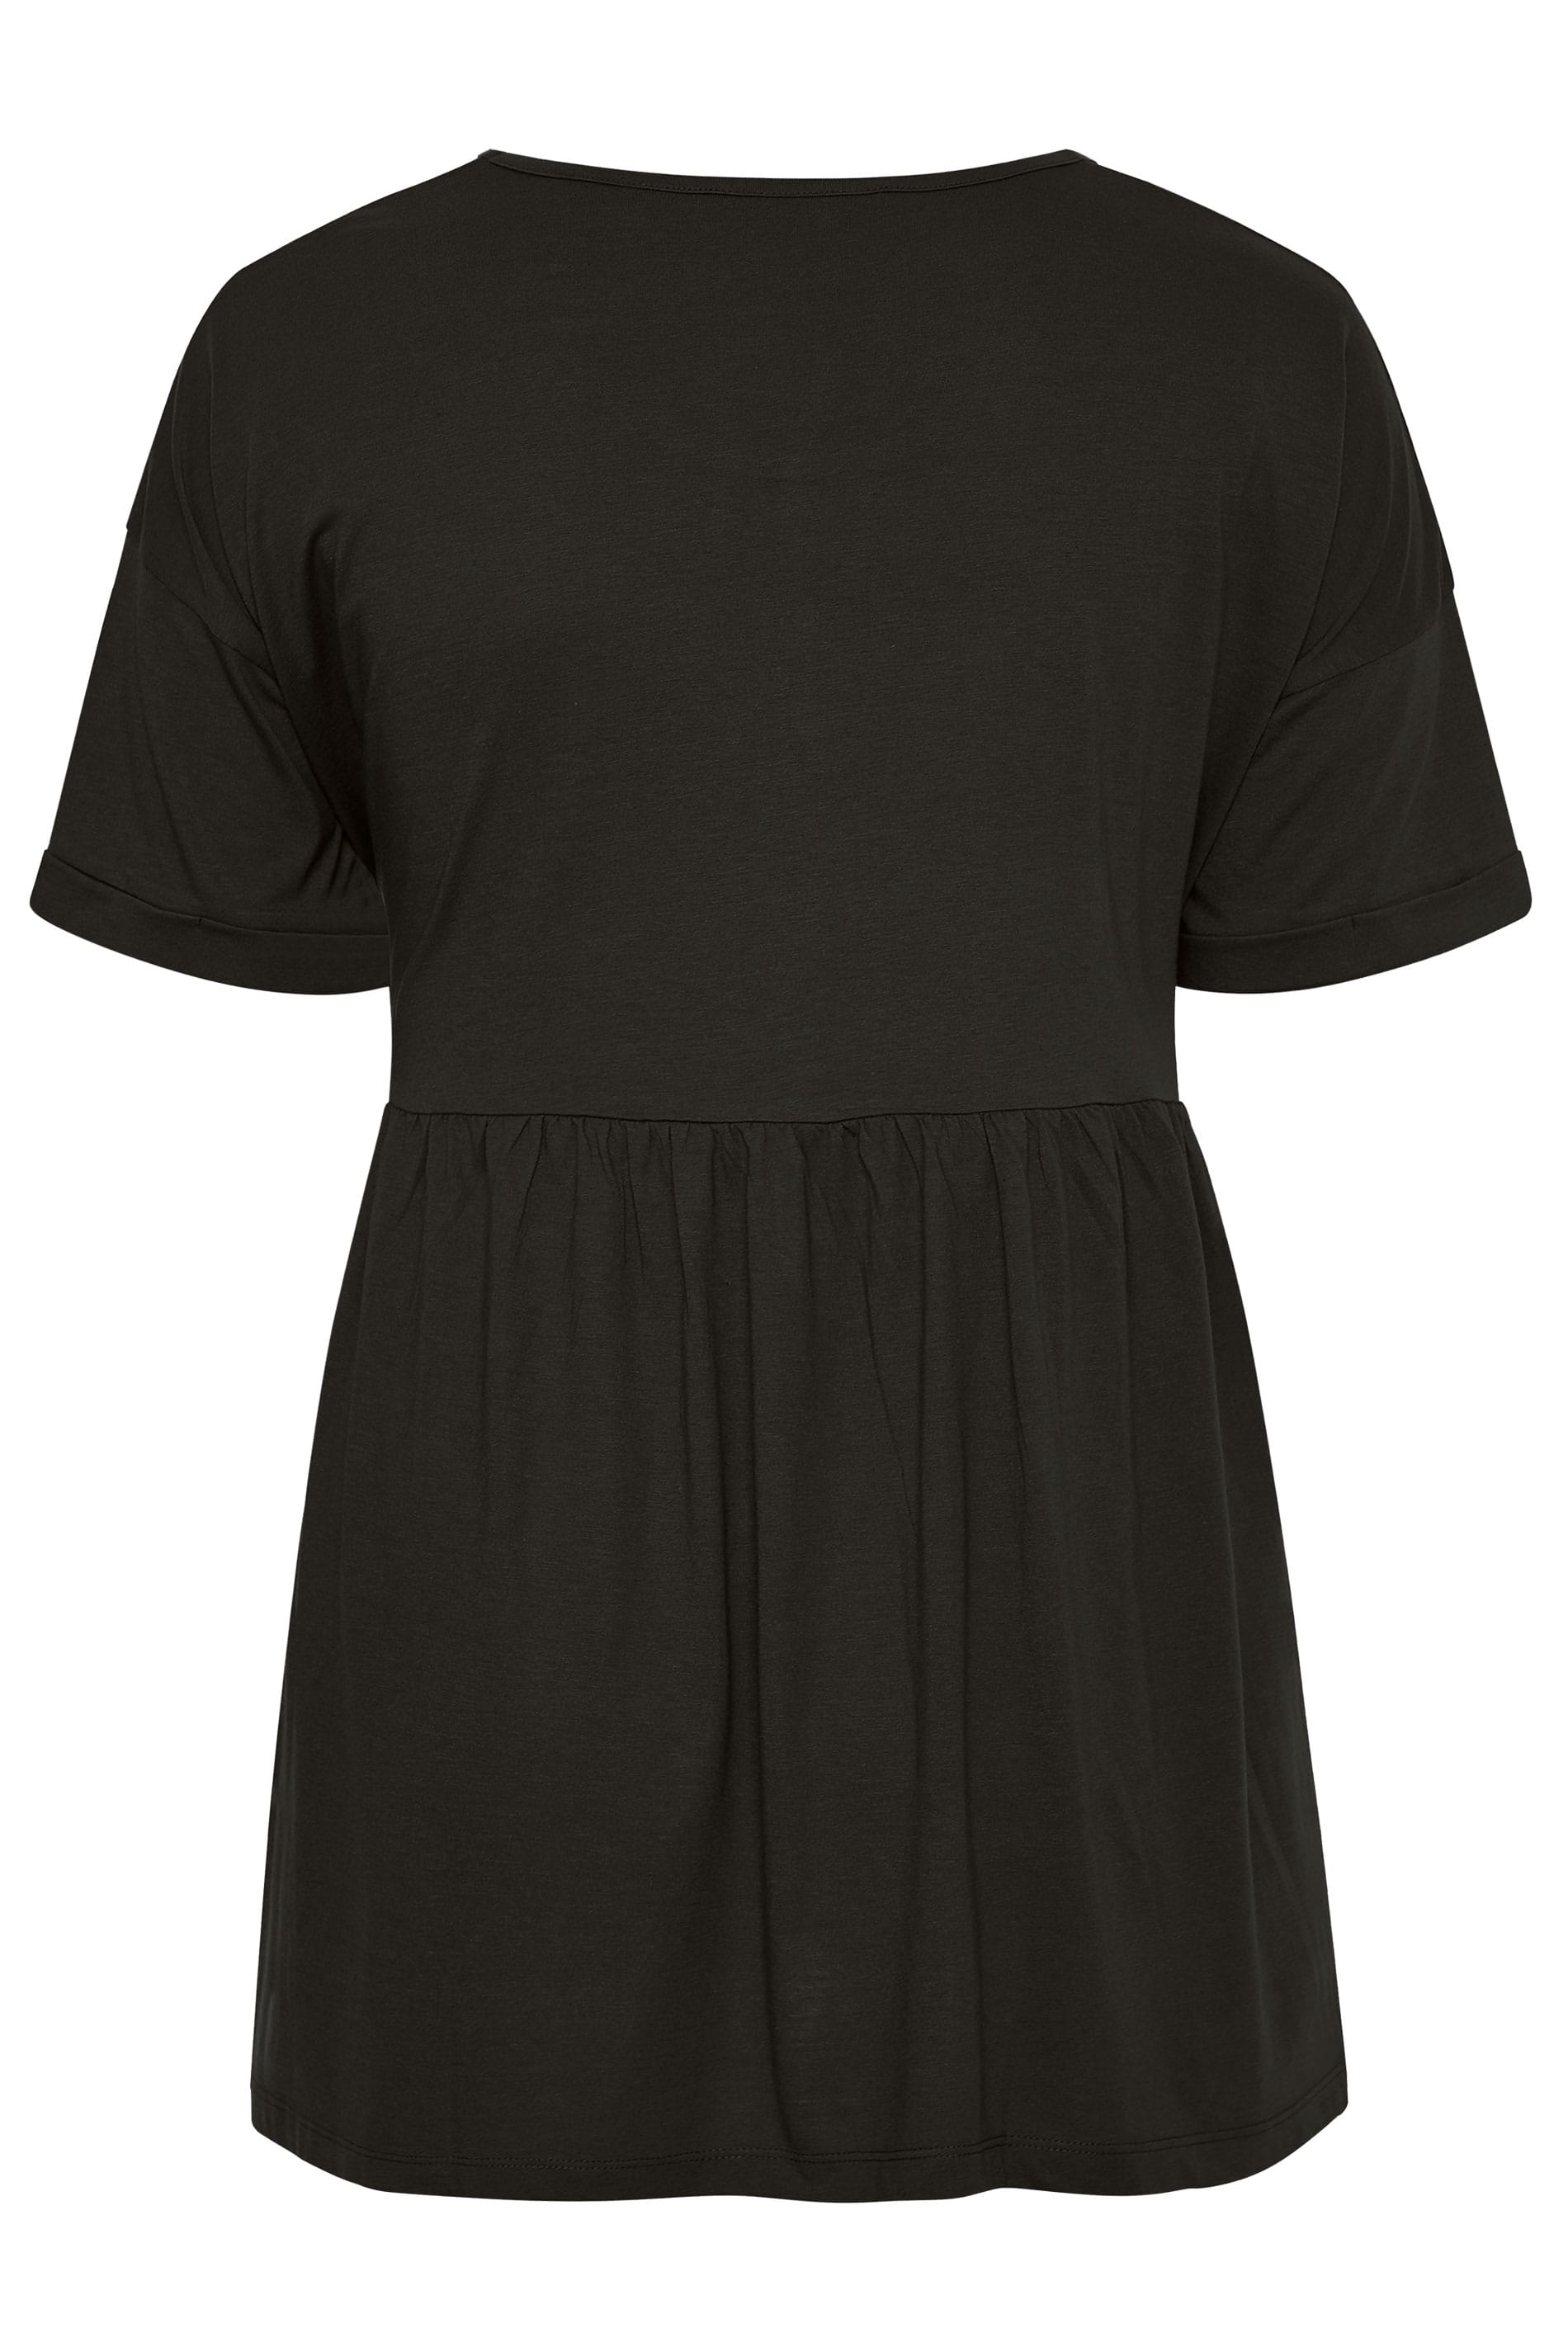 Plus Size Black Drop Shoulder Peplum Top | Yours Clothing